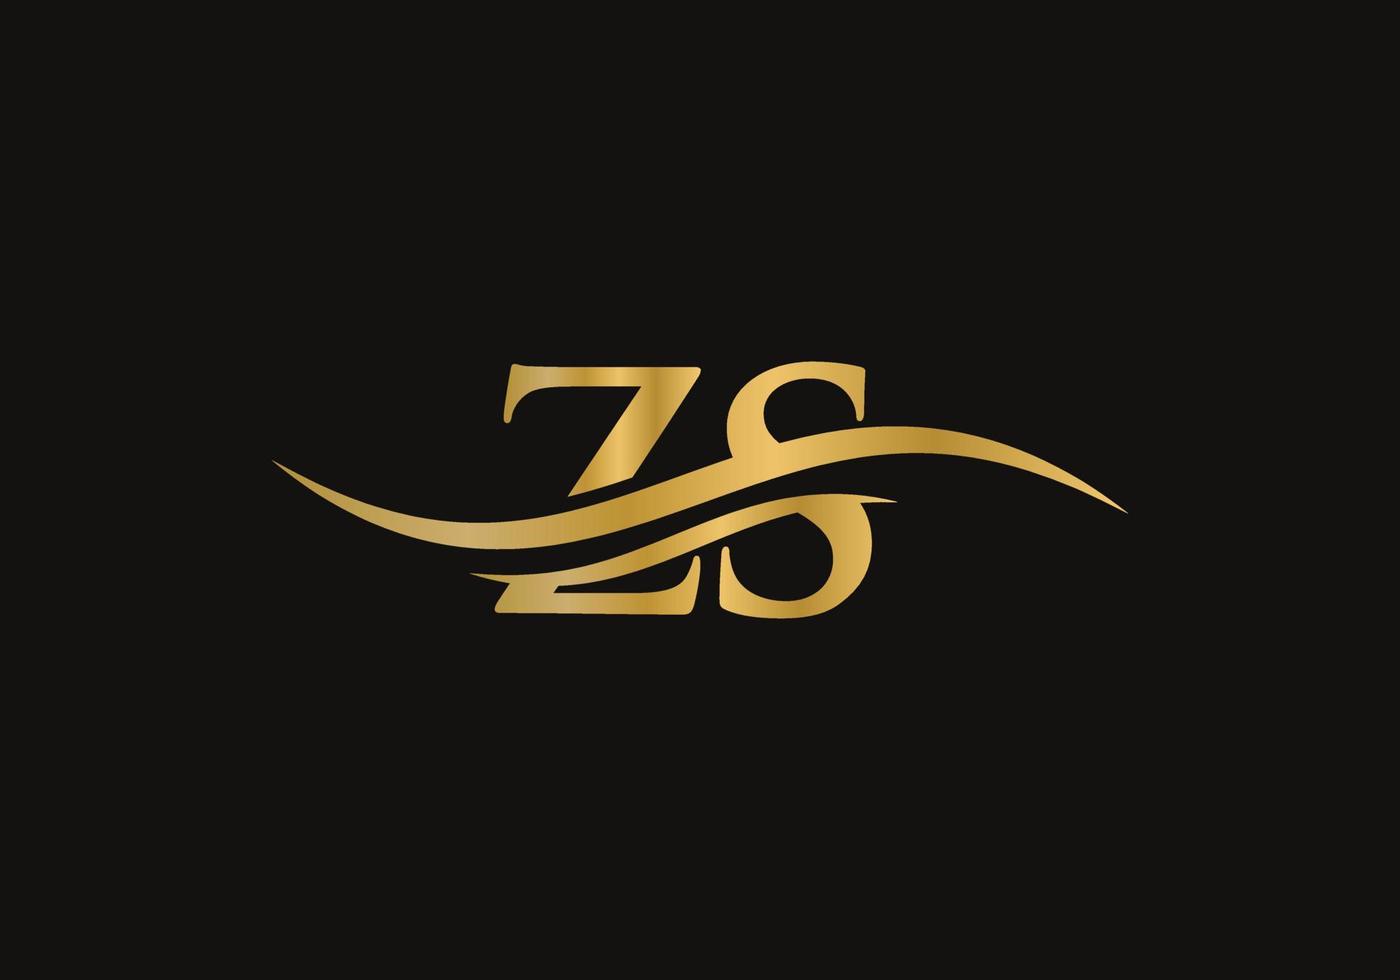 acqua onda zs logo vettore. swoosh lettera zs logo design per attività commerciale e azienda identità vettore